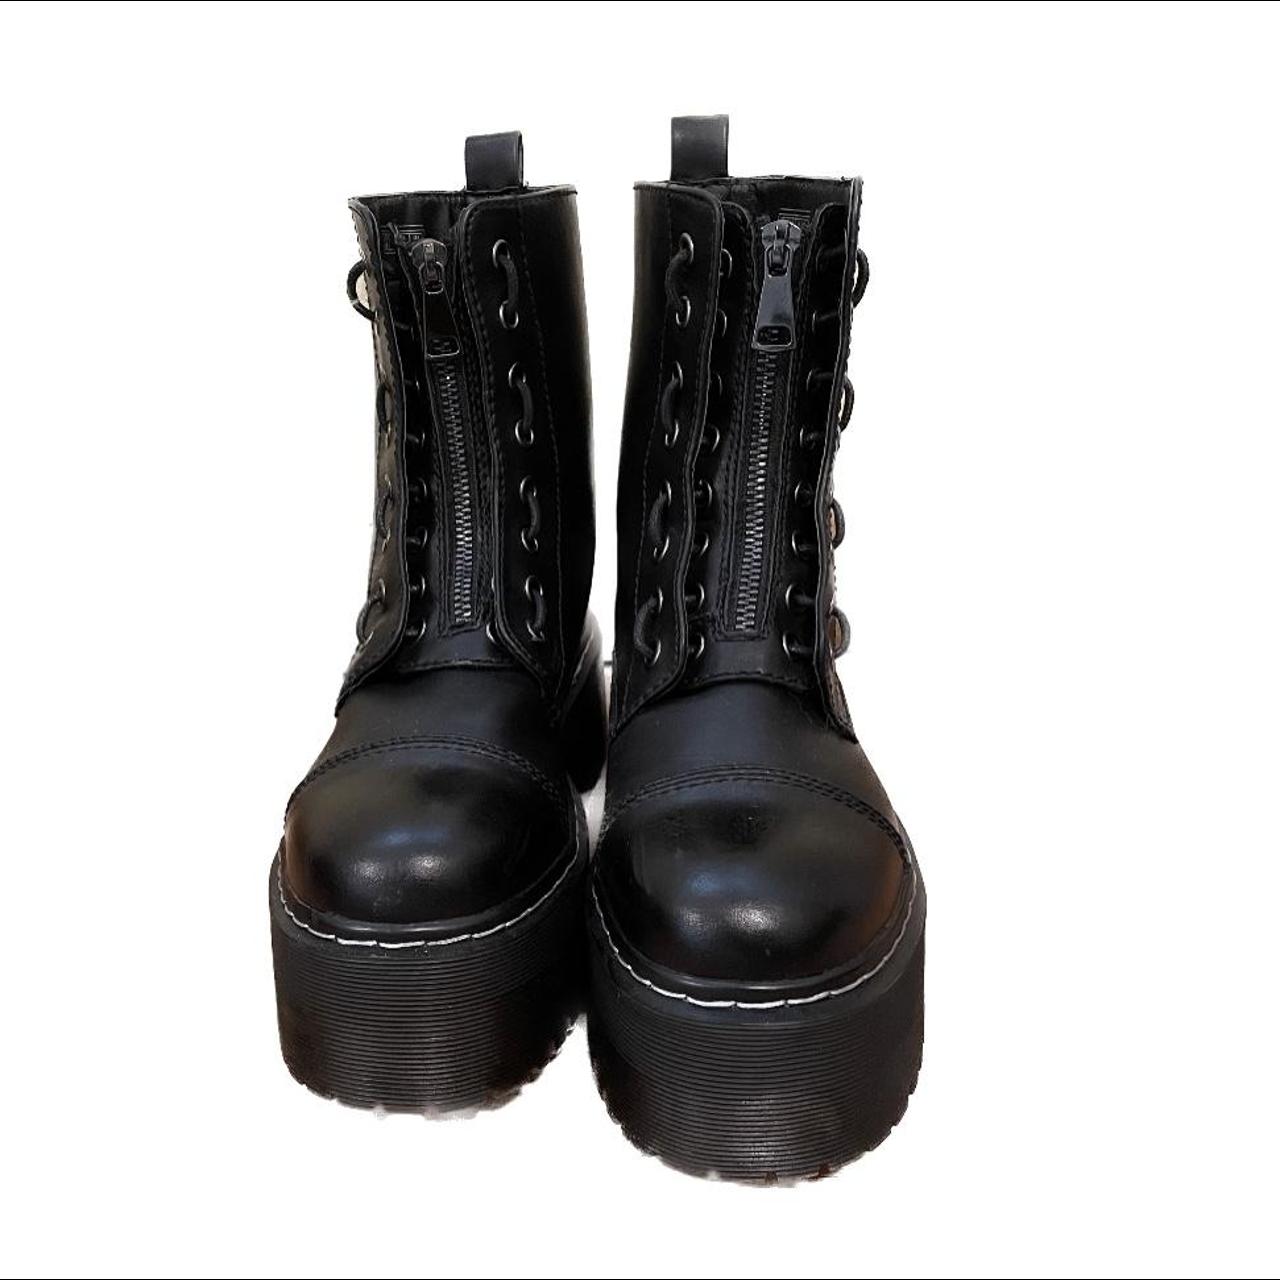 Vintage Black Leather Platform Combat Boots Great... - Depop